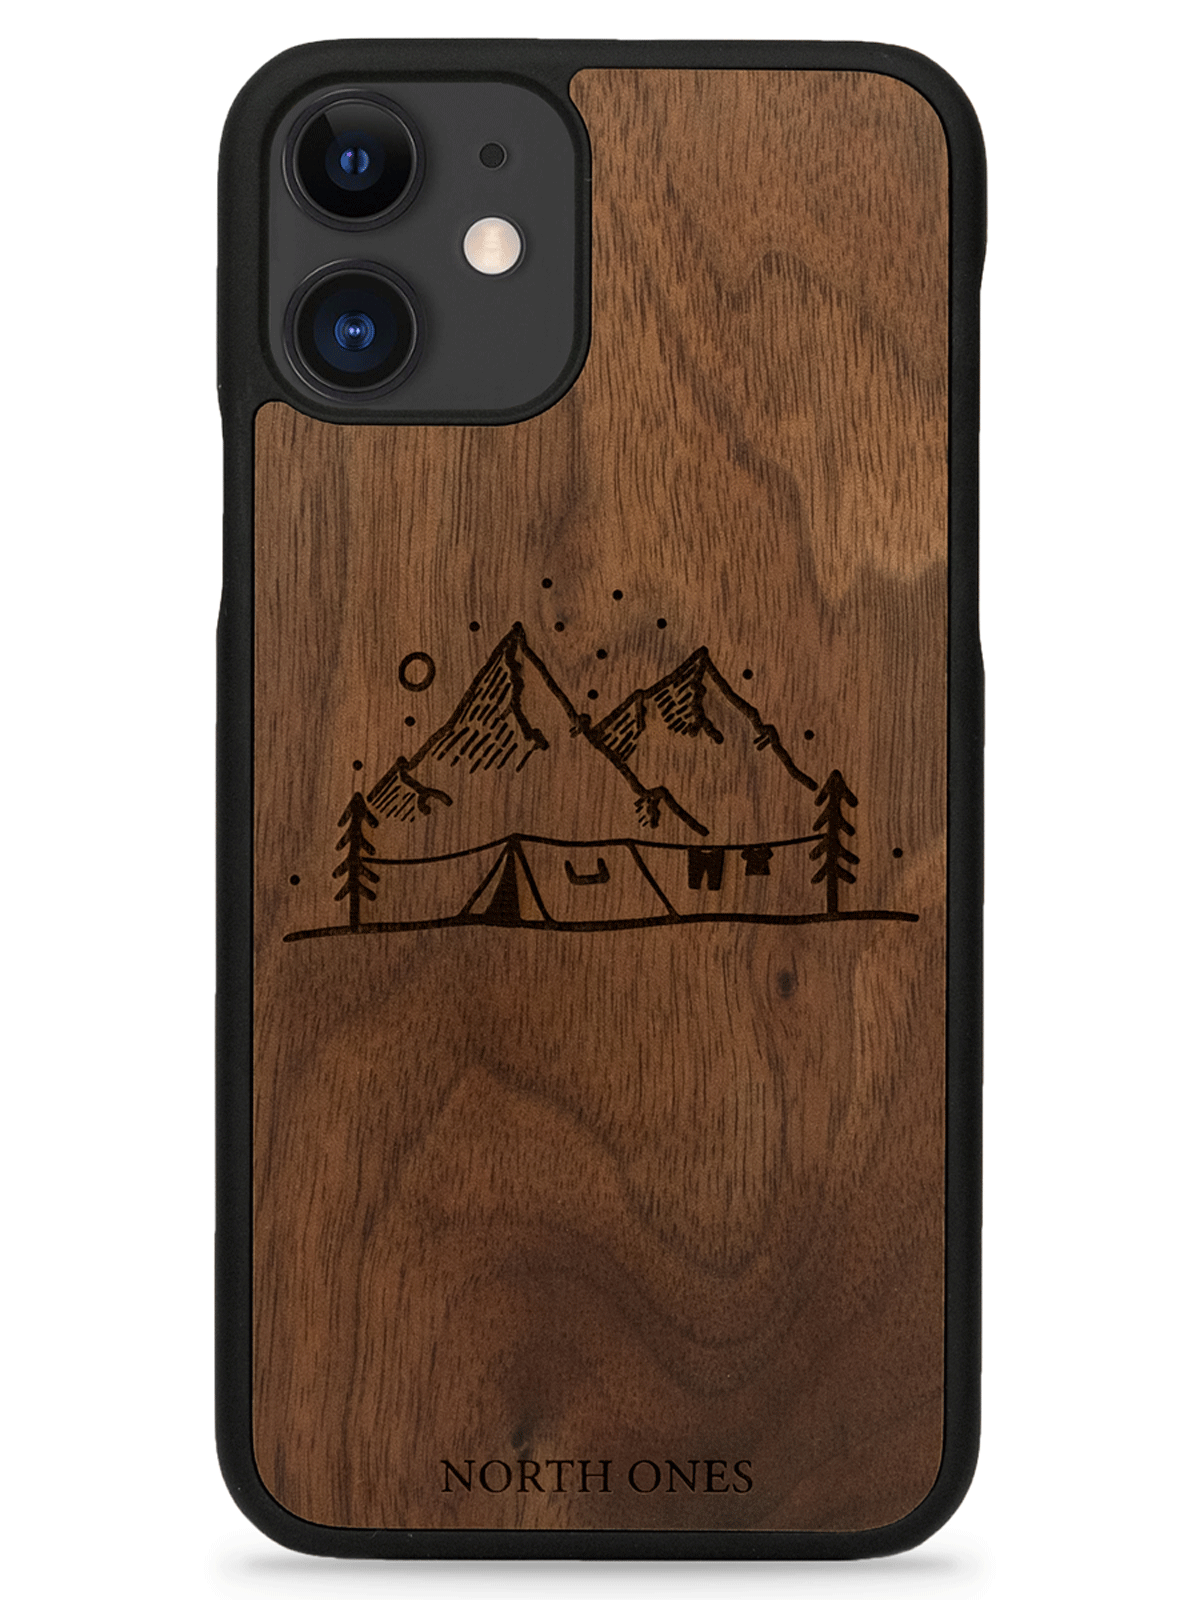 Mobilskal trä vildmark walnut inivildmarken edition iphone 11